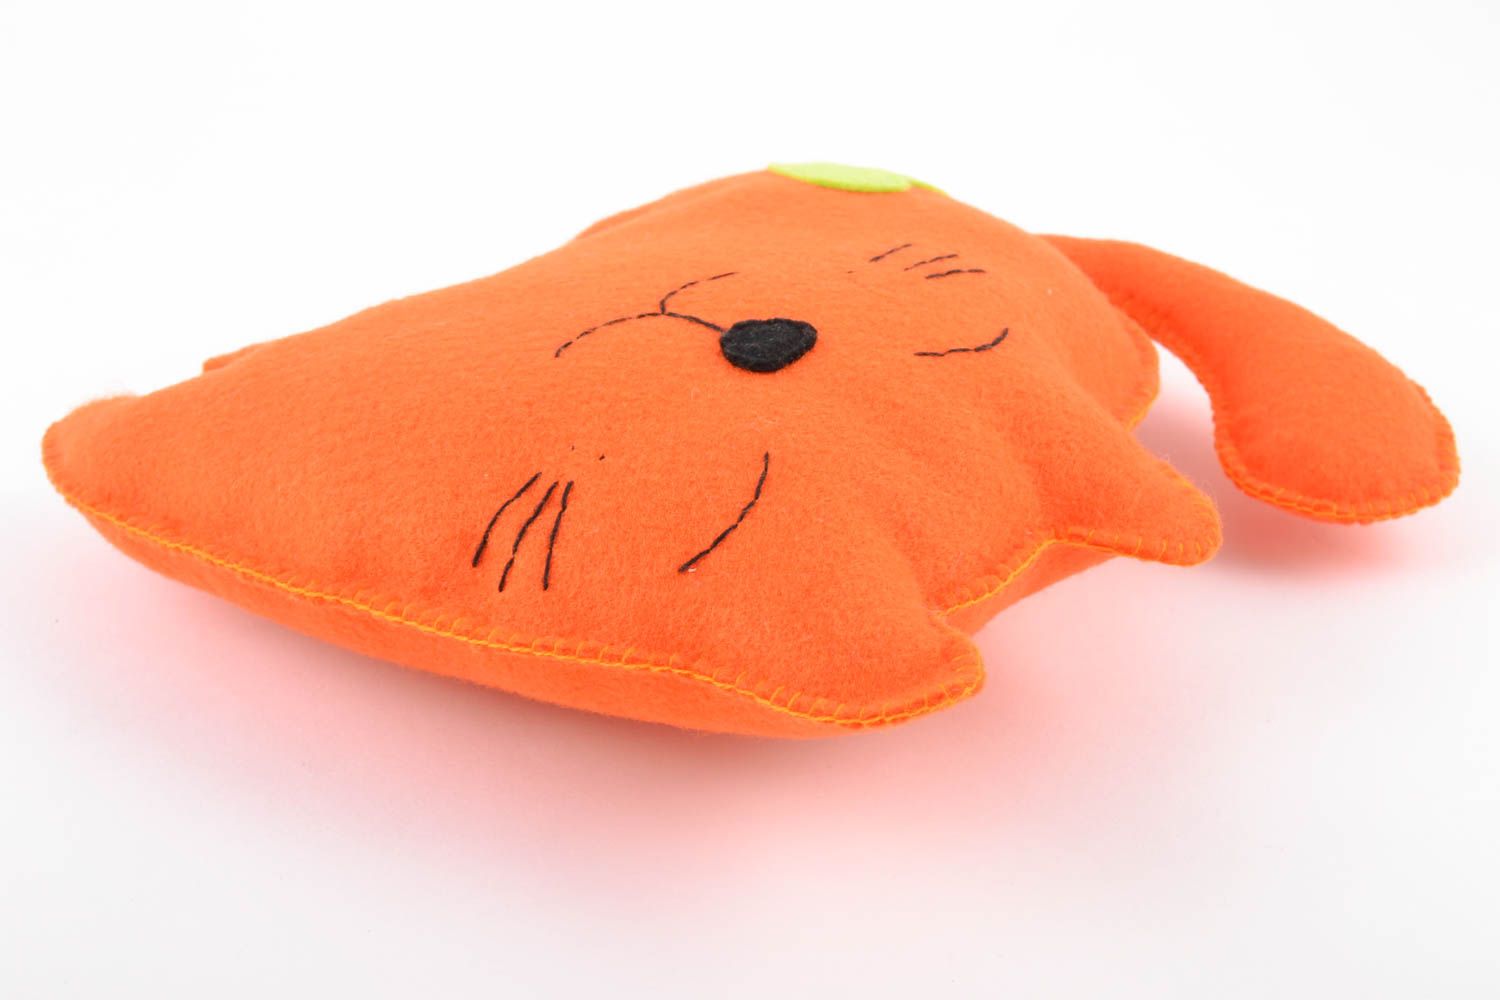 Оранжевая игрушка в виде кота ручной работы из фетра красивая оригинальная фото 5